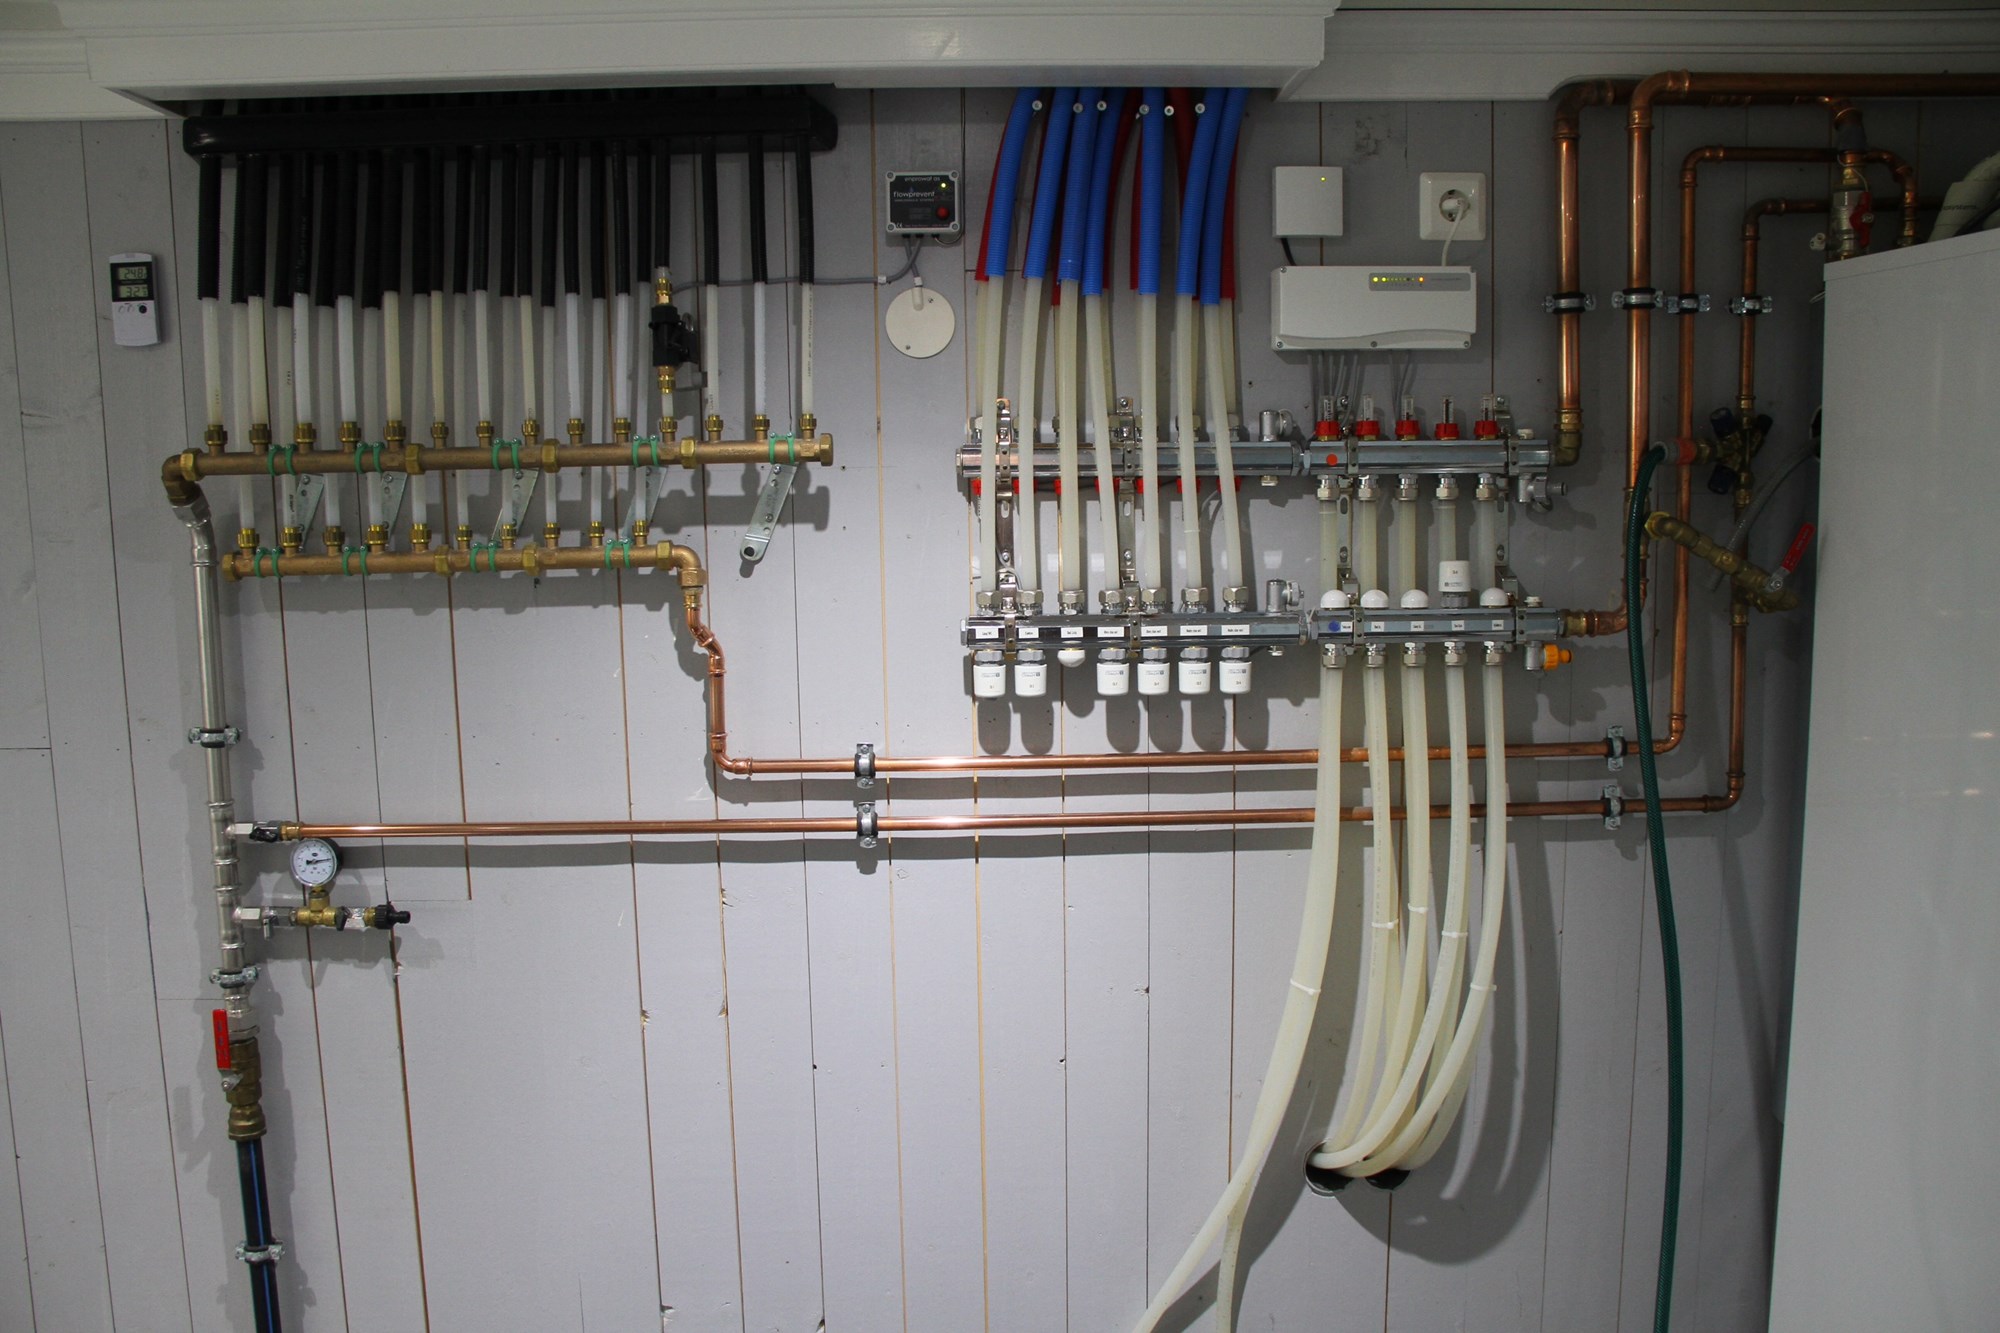 Sanipex tappevannsystem i garasje m/ leiligheter - 49124845-A9D6-498E-903E-8E537431E869.jpeg - olechrd